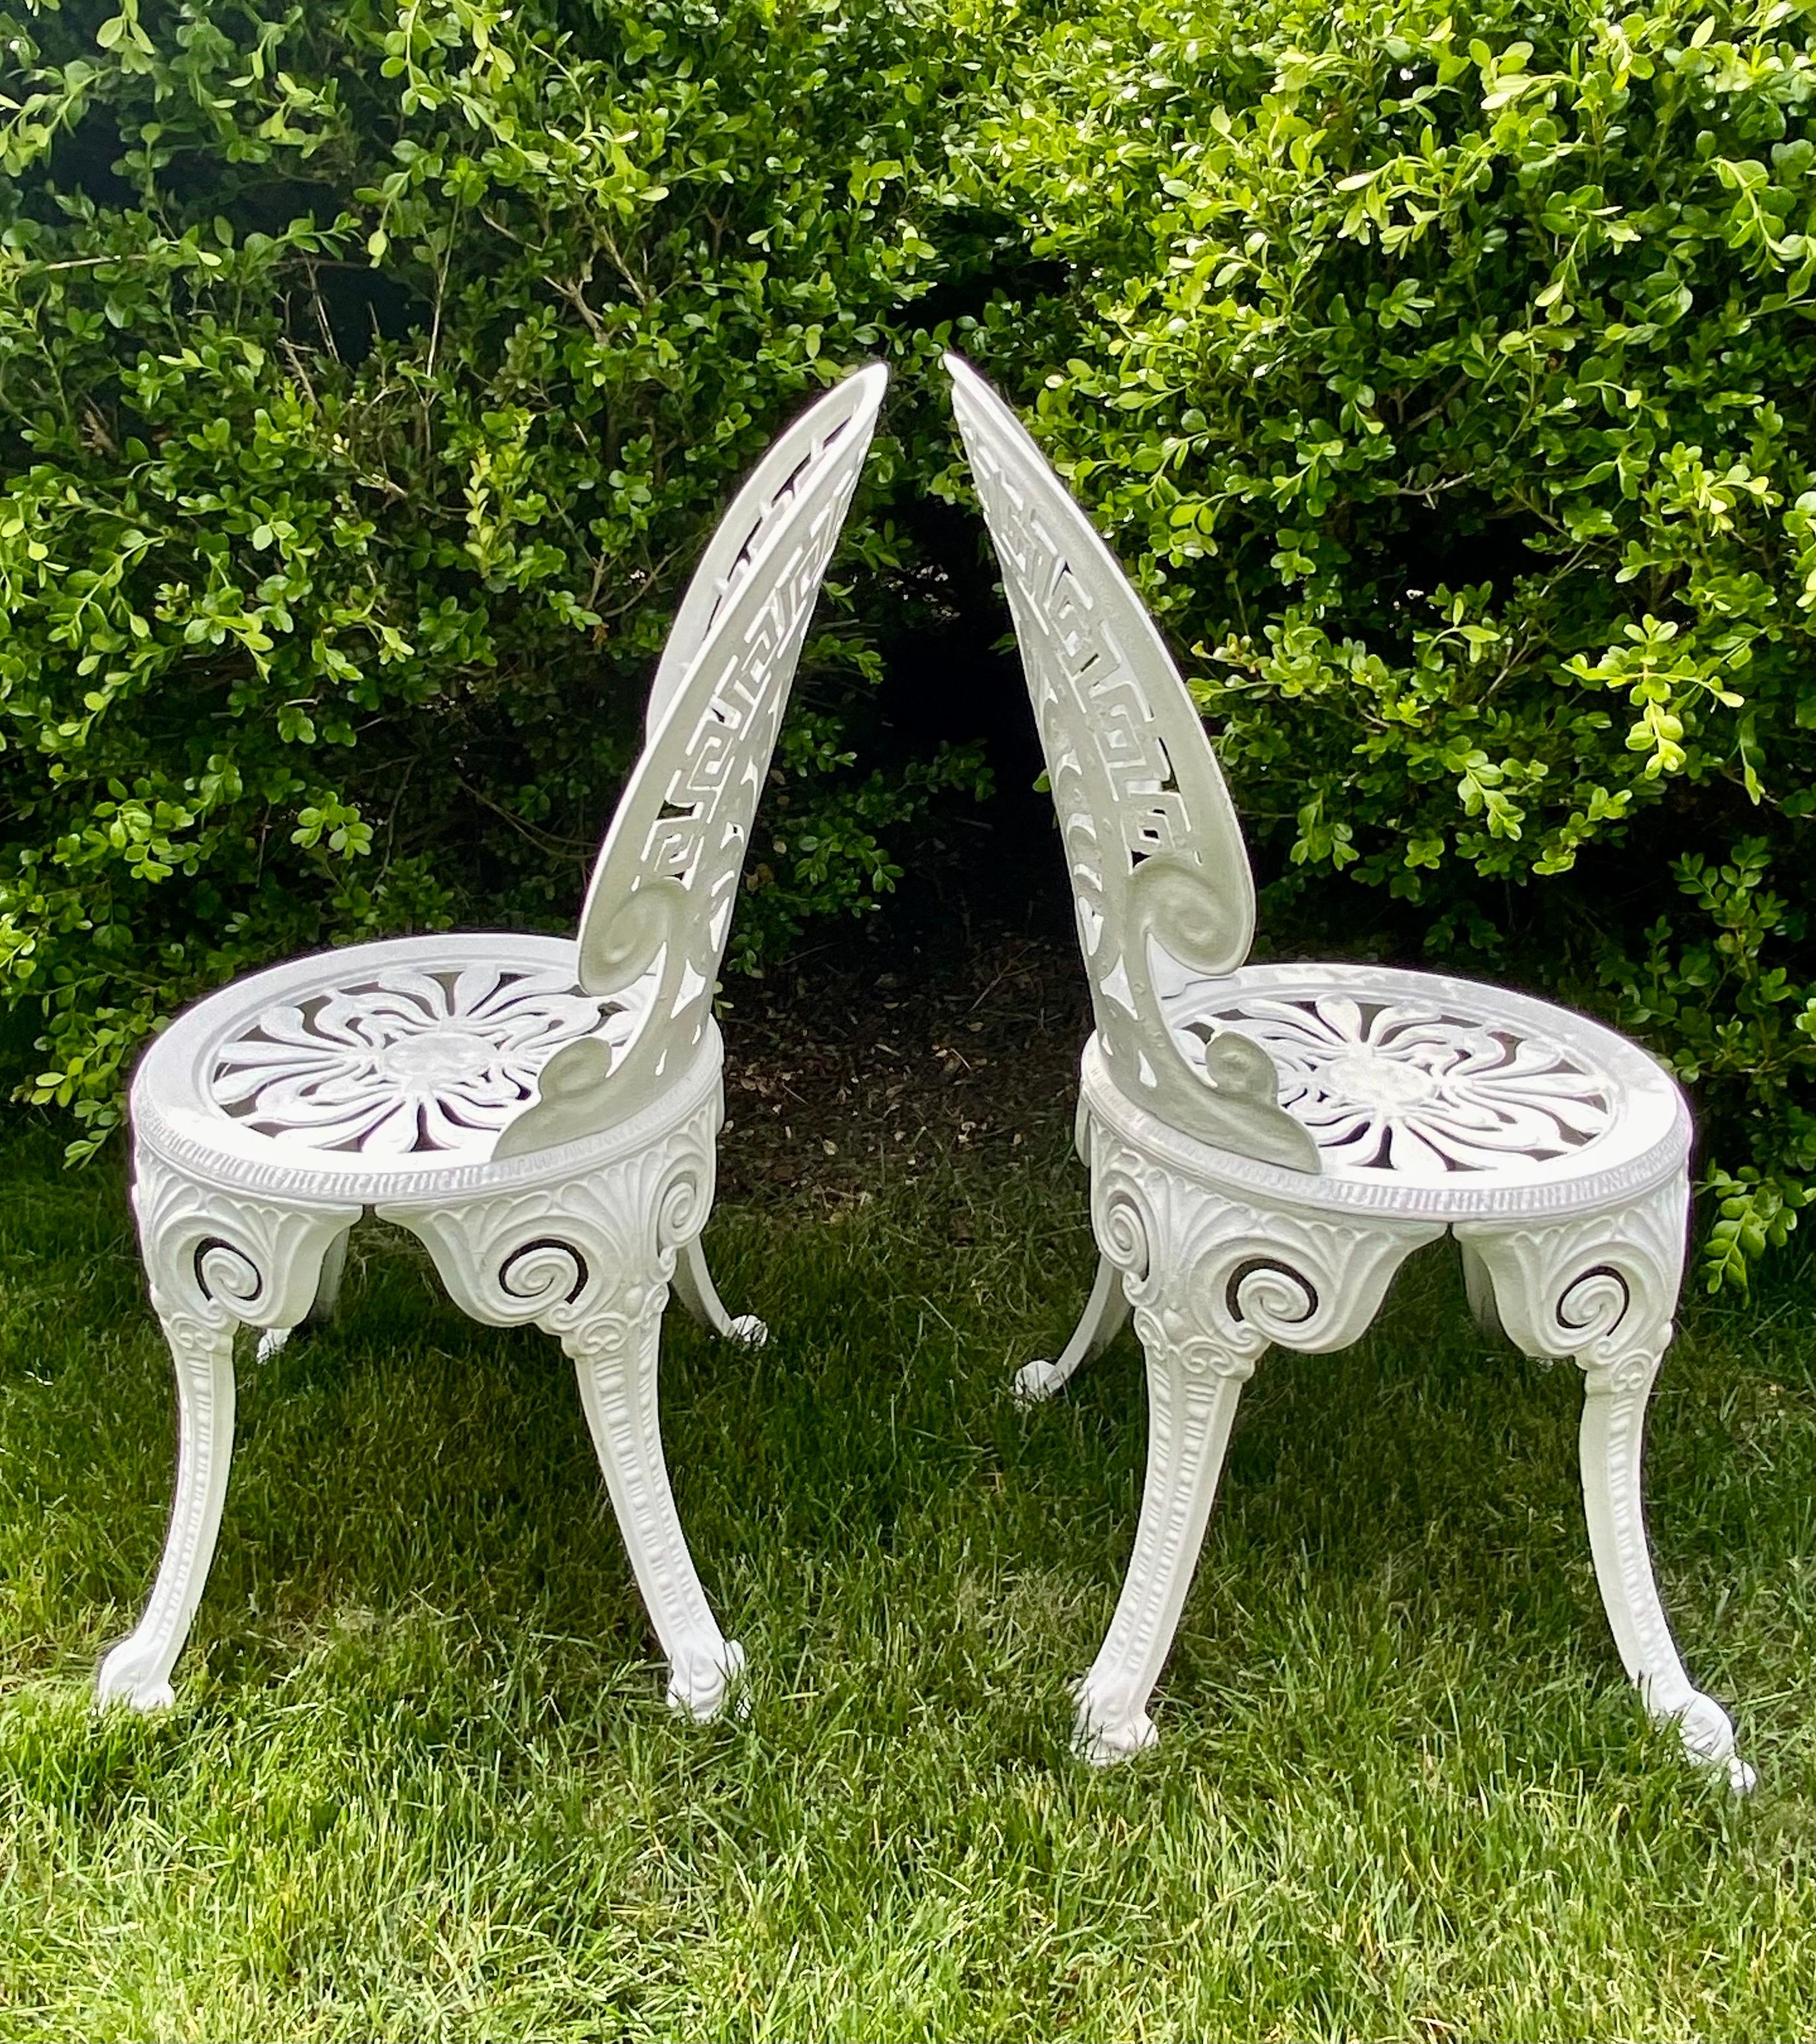 Paire de chaises de jardin en aluminium blanc de style Hollywood Regency avec des motifs de clé grecque et d'éventail.  Ces fauteuils d'appoint sans accoudoirs sont parfaits pour le jardin ou le patio.  Léger, robuste et durable.  
